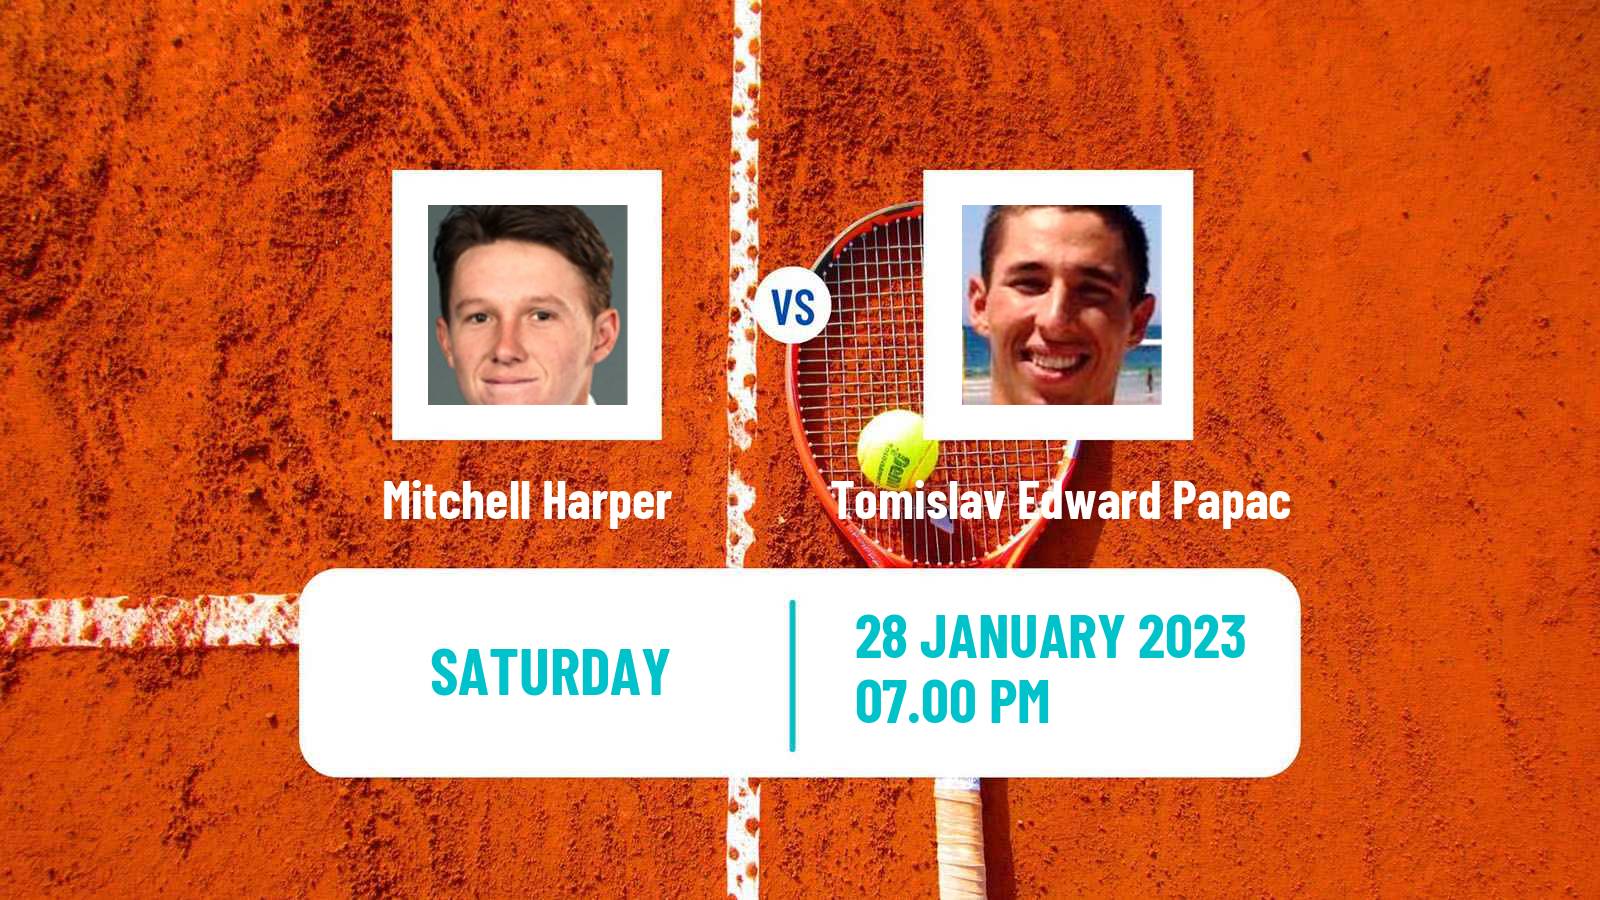 Tennis ATP Challenger Mitchell Harper - Tomislav Edward Papac